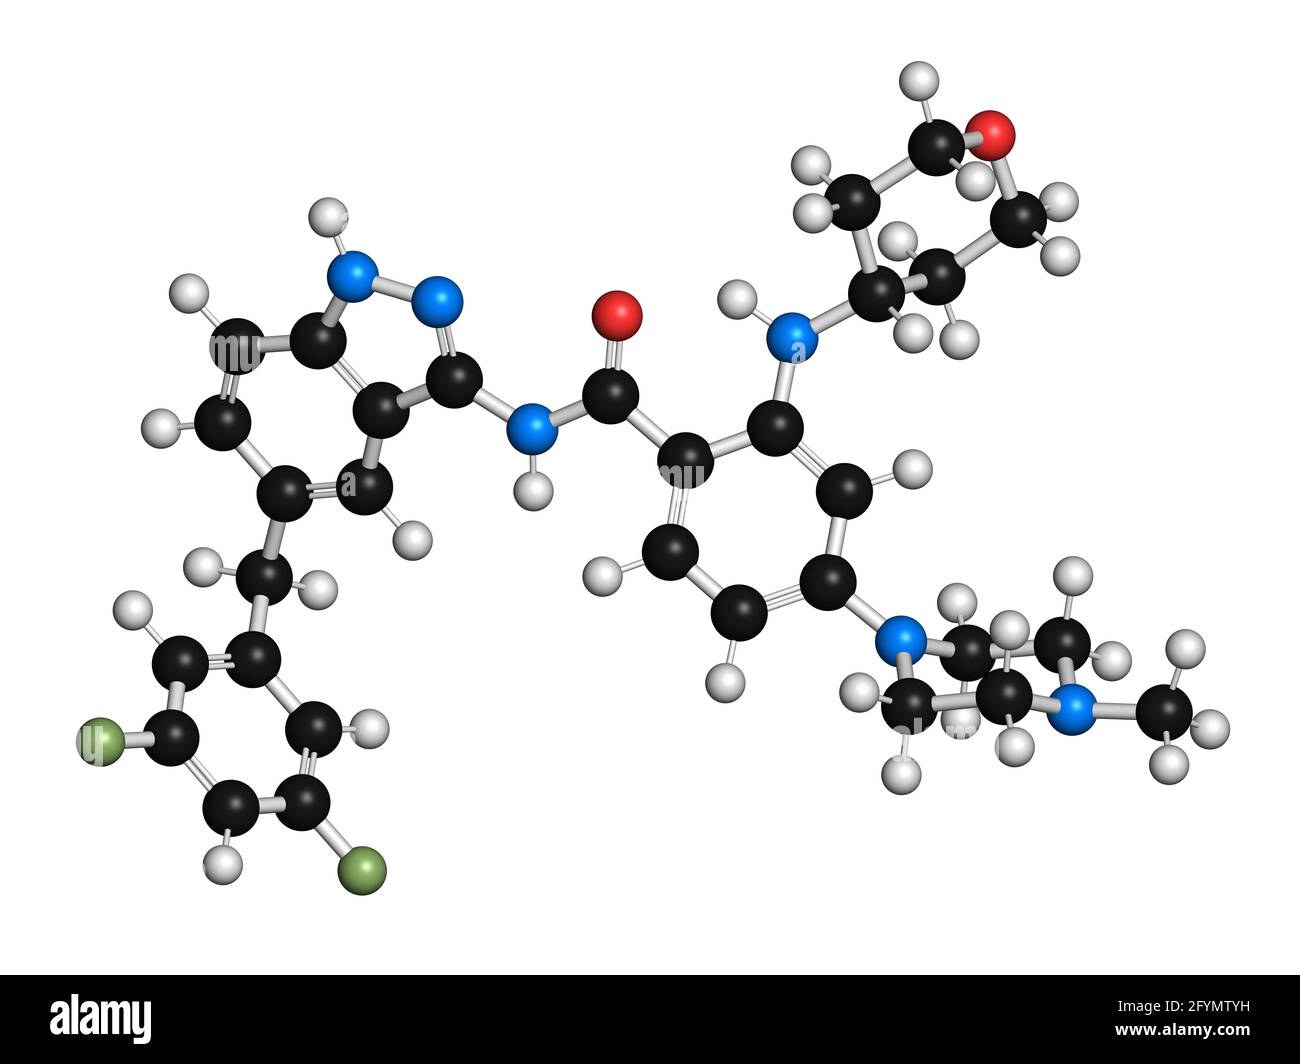 Molécule de médicament anticancéreux Entrectinib, illustration Banque D'Images